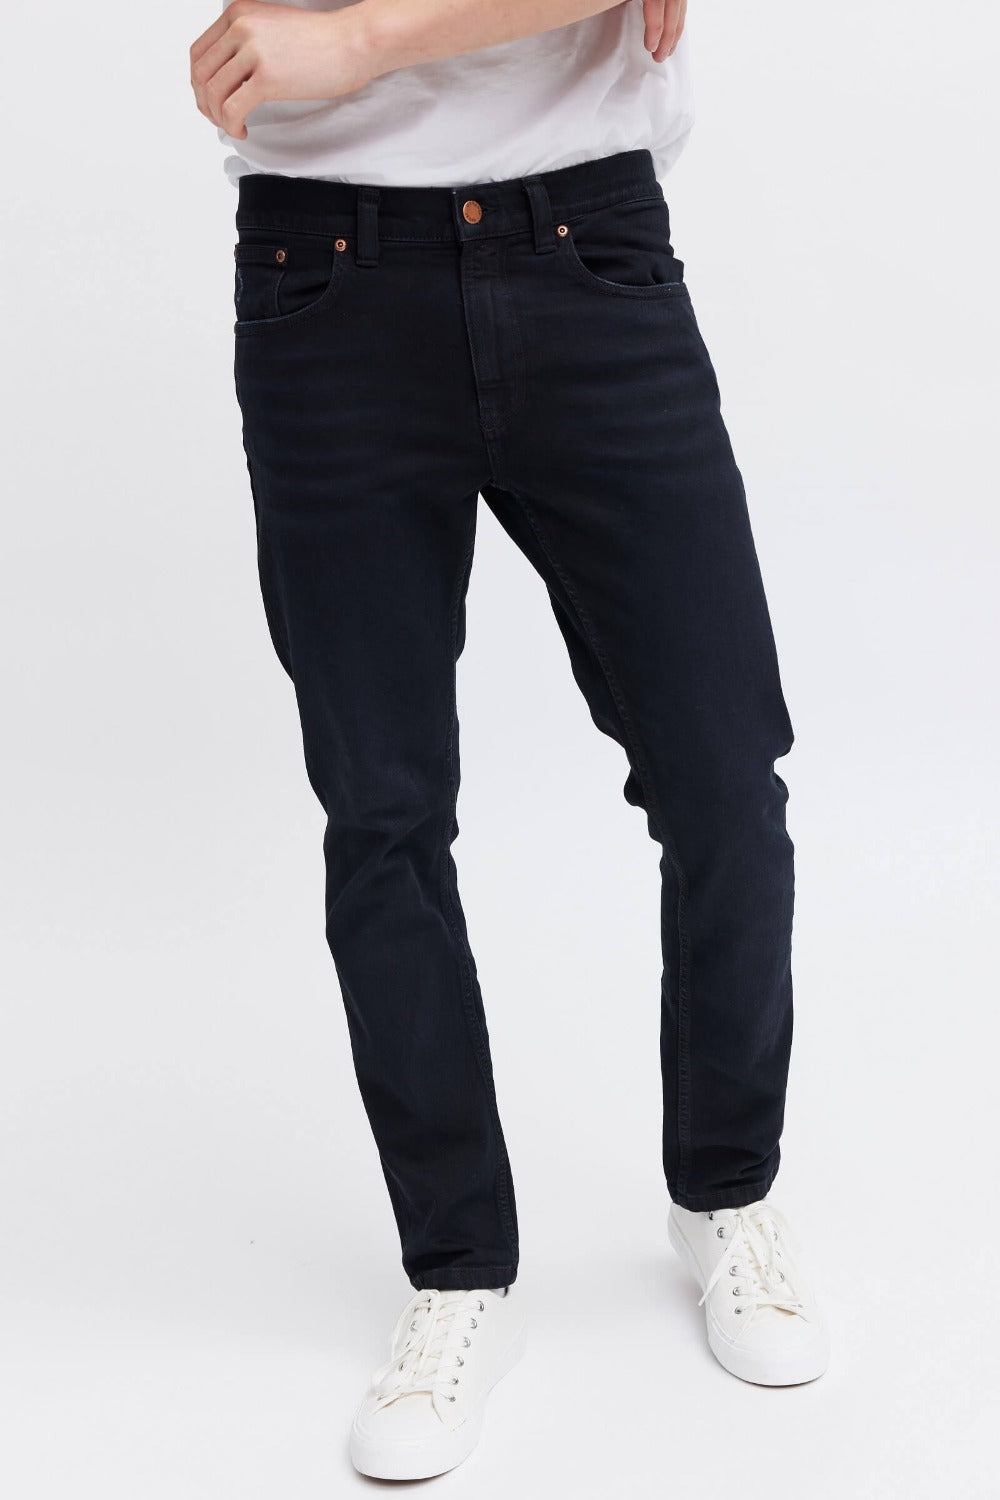 Organic black jeans for men